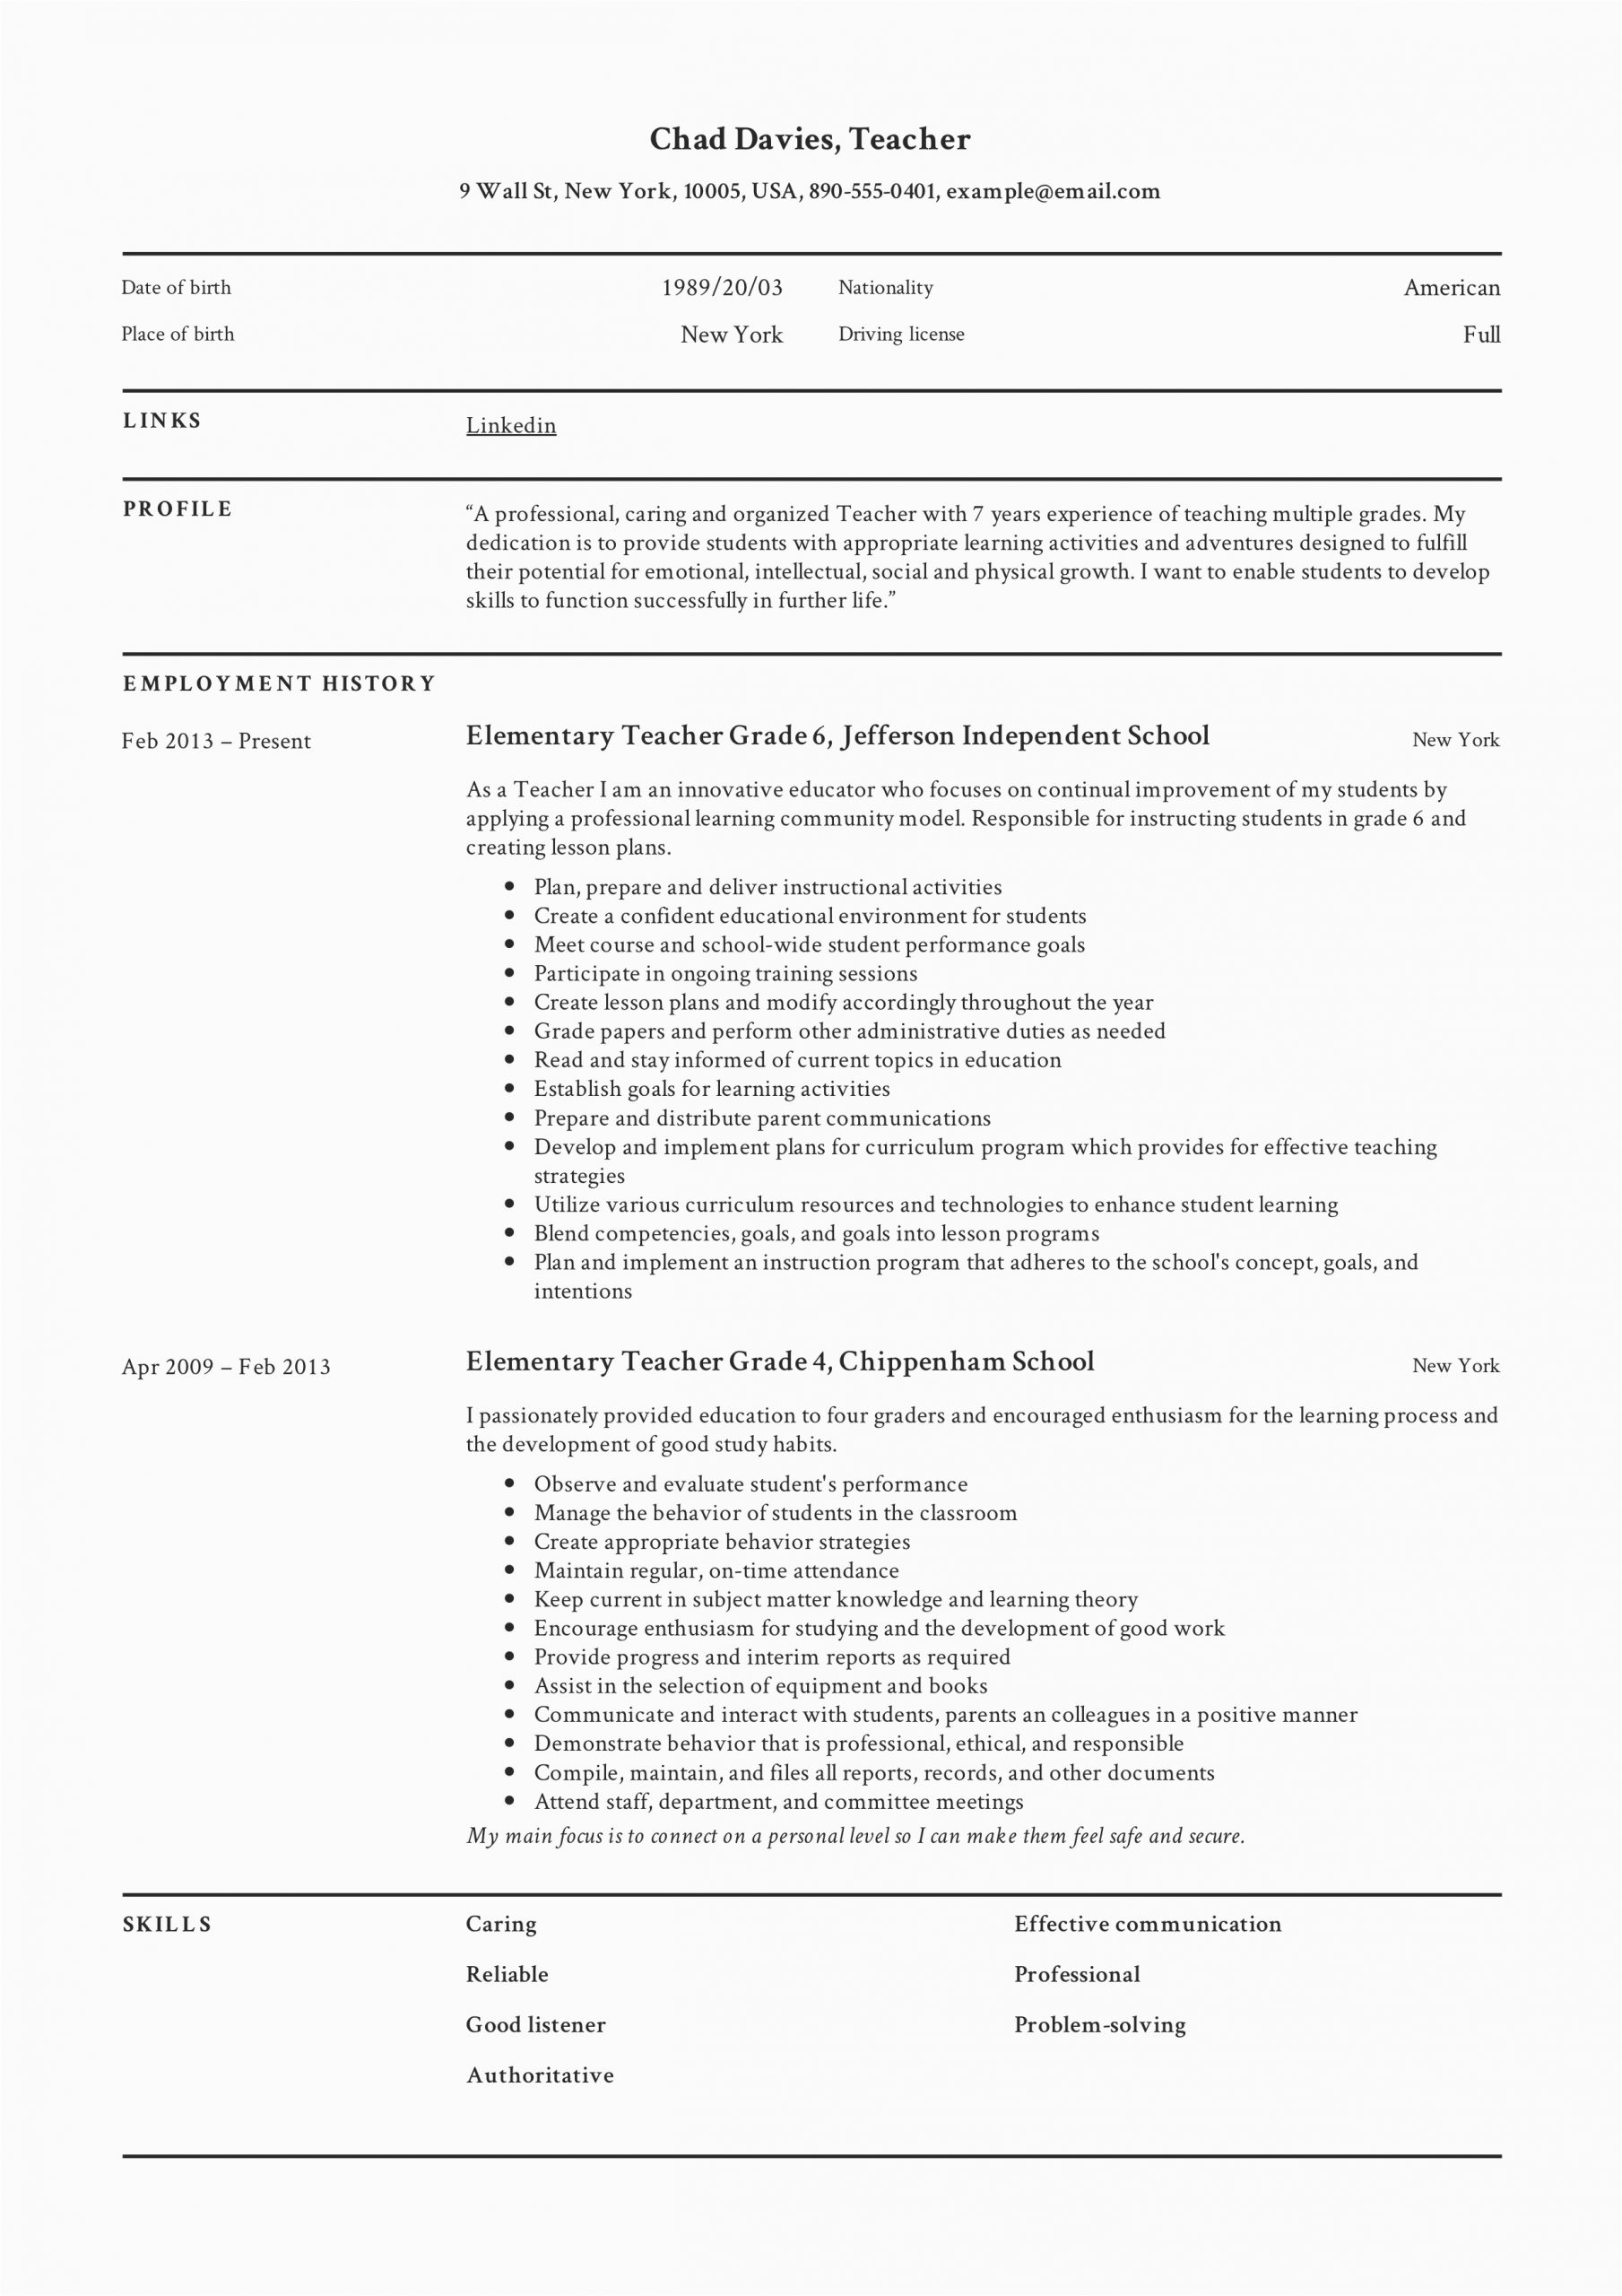 Resume Sample for Teacher Job Pdf Teacher Resume & Writing Guide 12 Samples Pdf